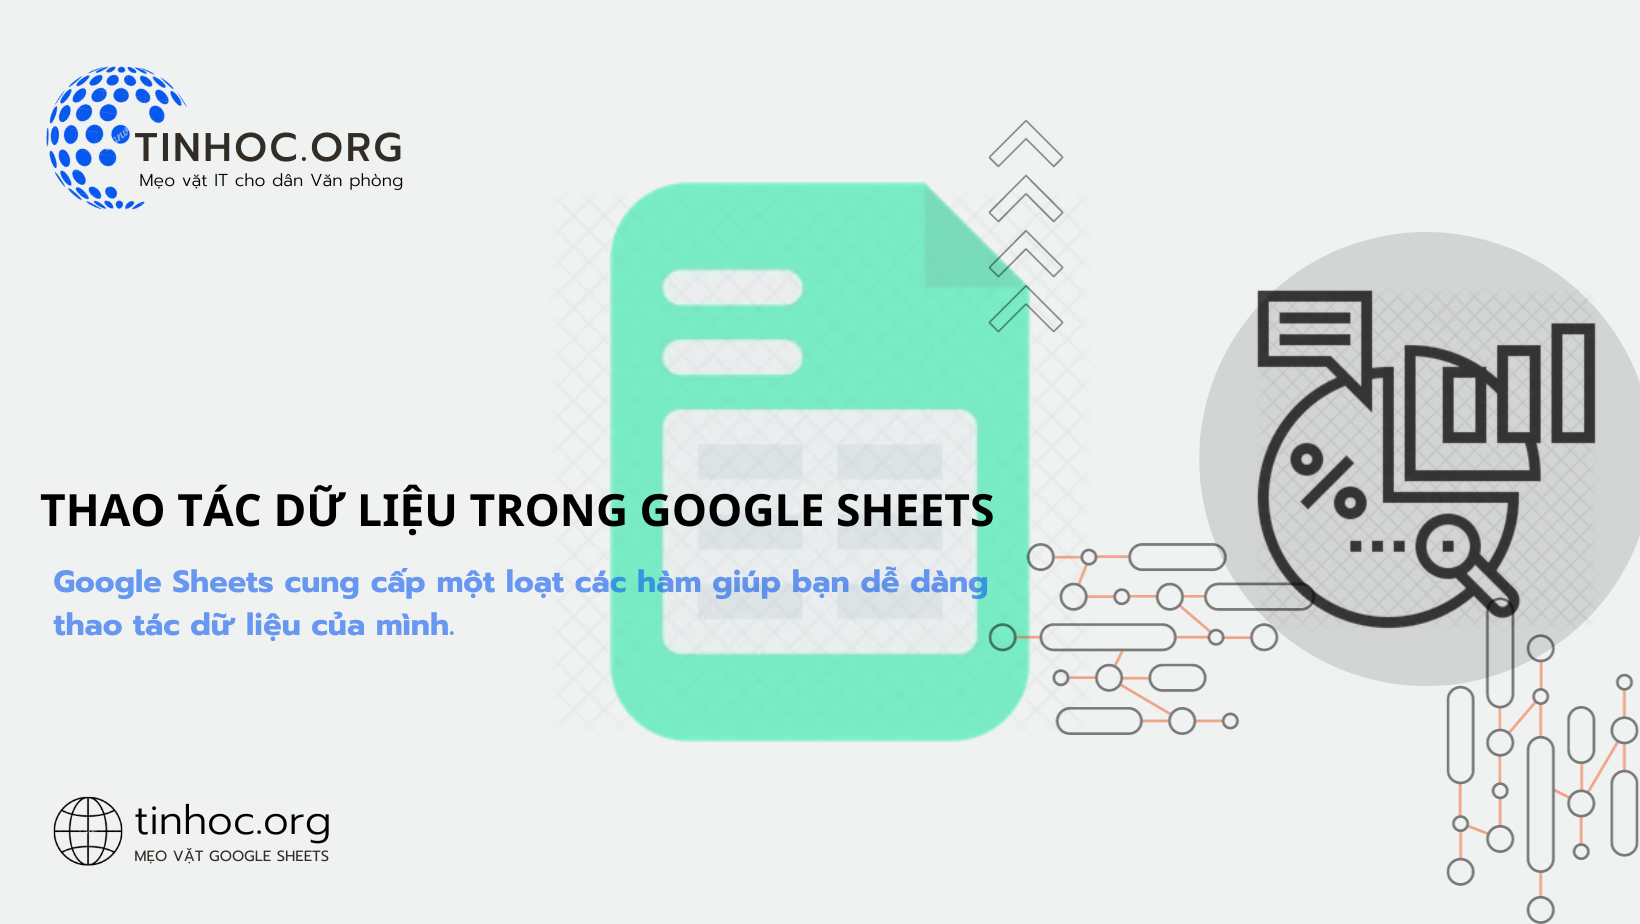 Hướng dẫn sử dụng các hàm thao tác dữ liệu trong Google Sheets, bao gồm các loại hàm, cách sử dụng, một số hàm phổ biến và mẹo sử dụng.